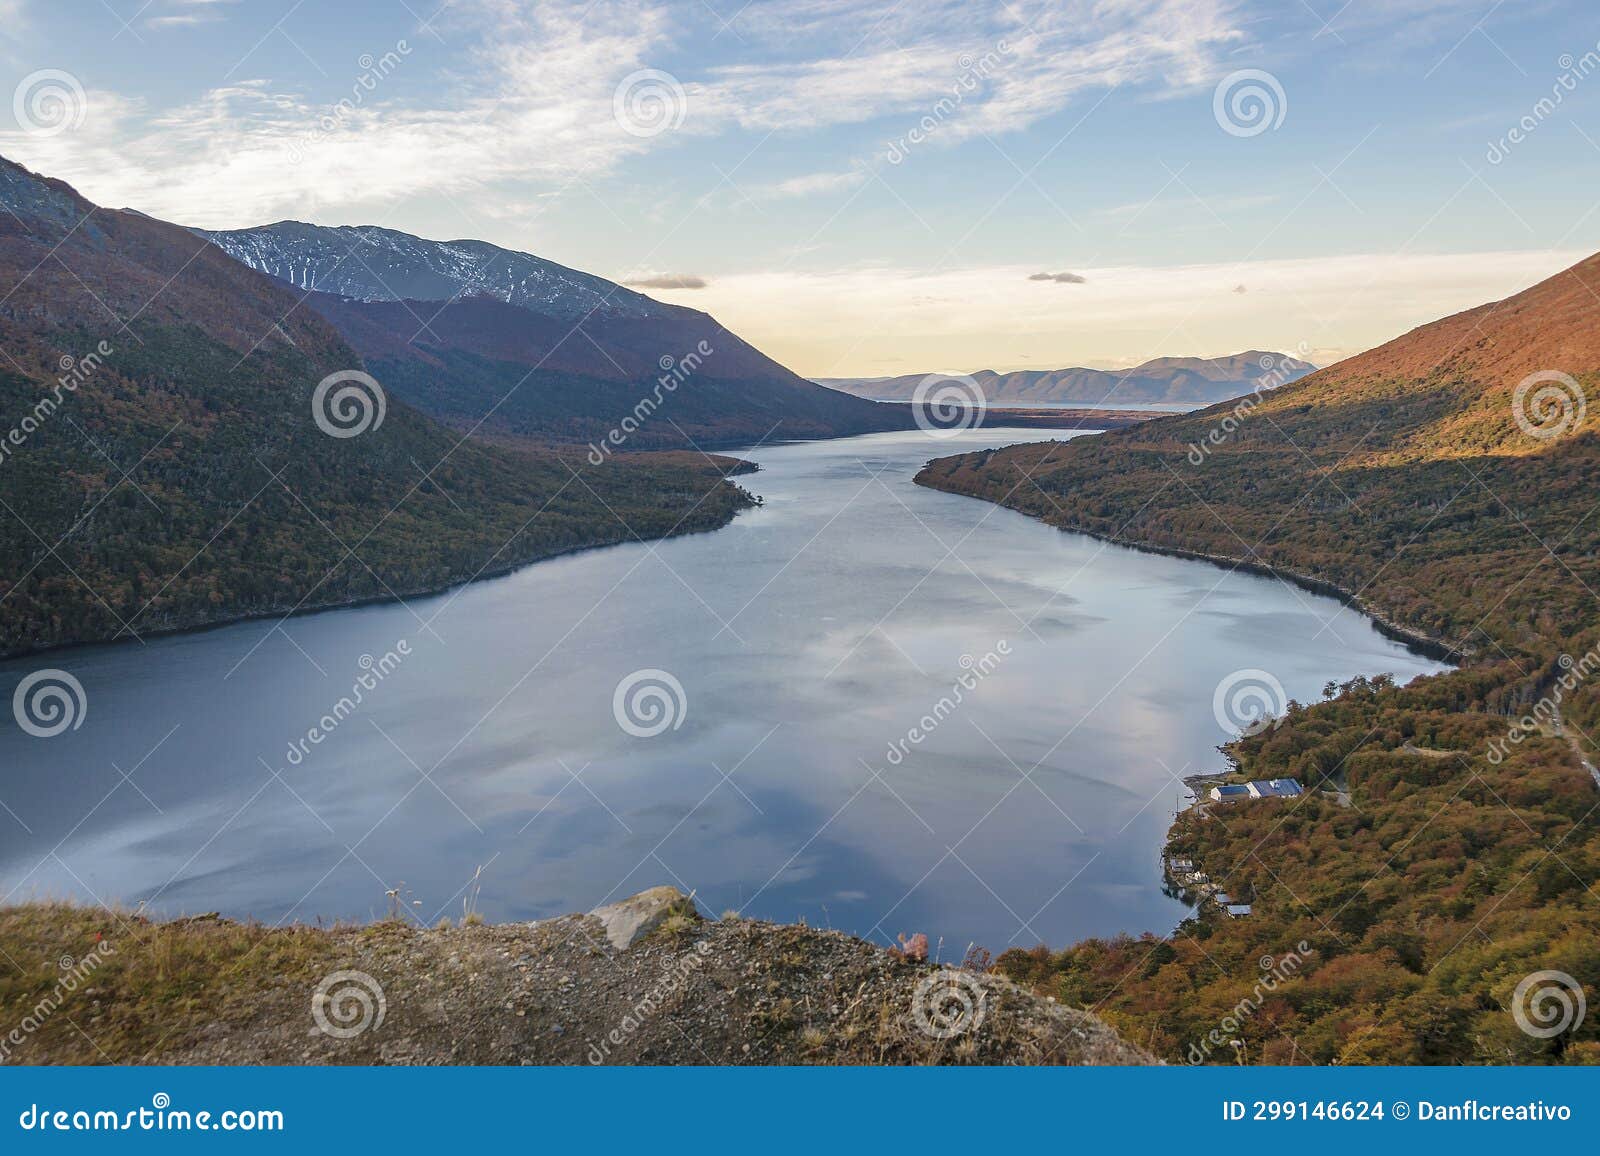 lago escondido landscape, tierra del fuego, argentina